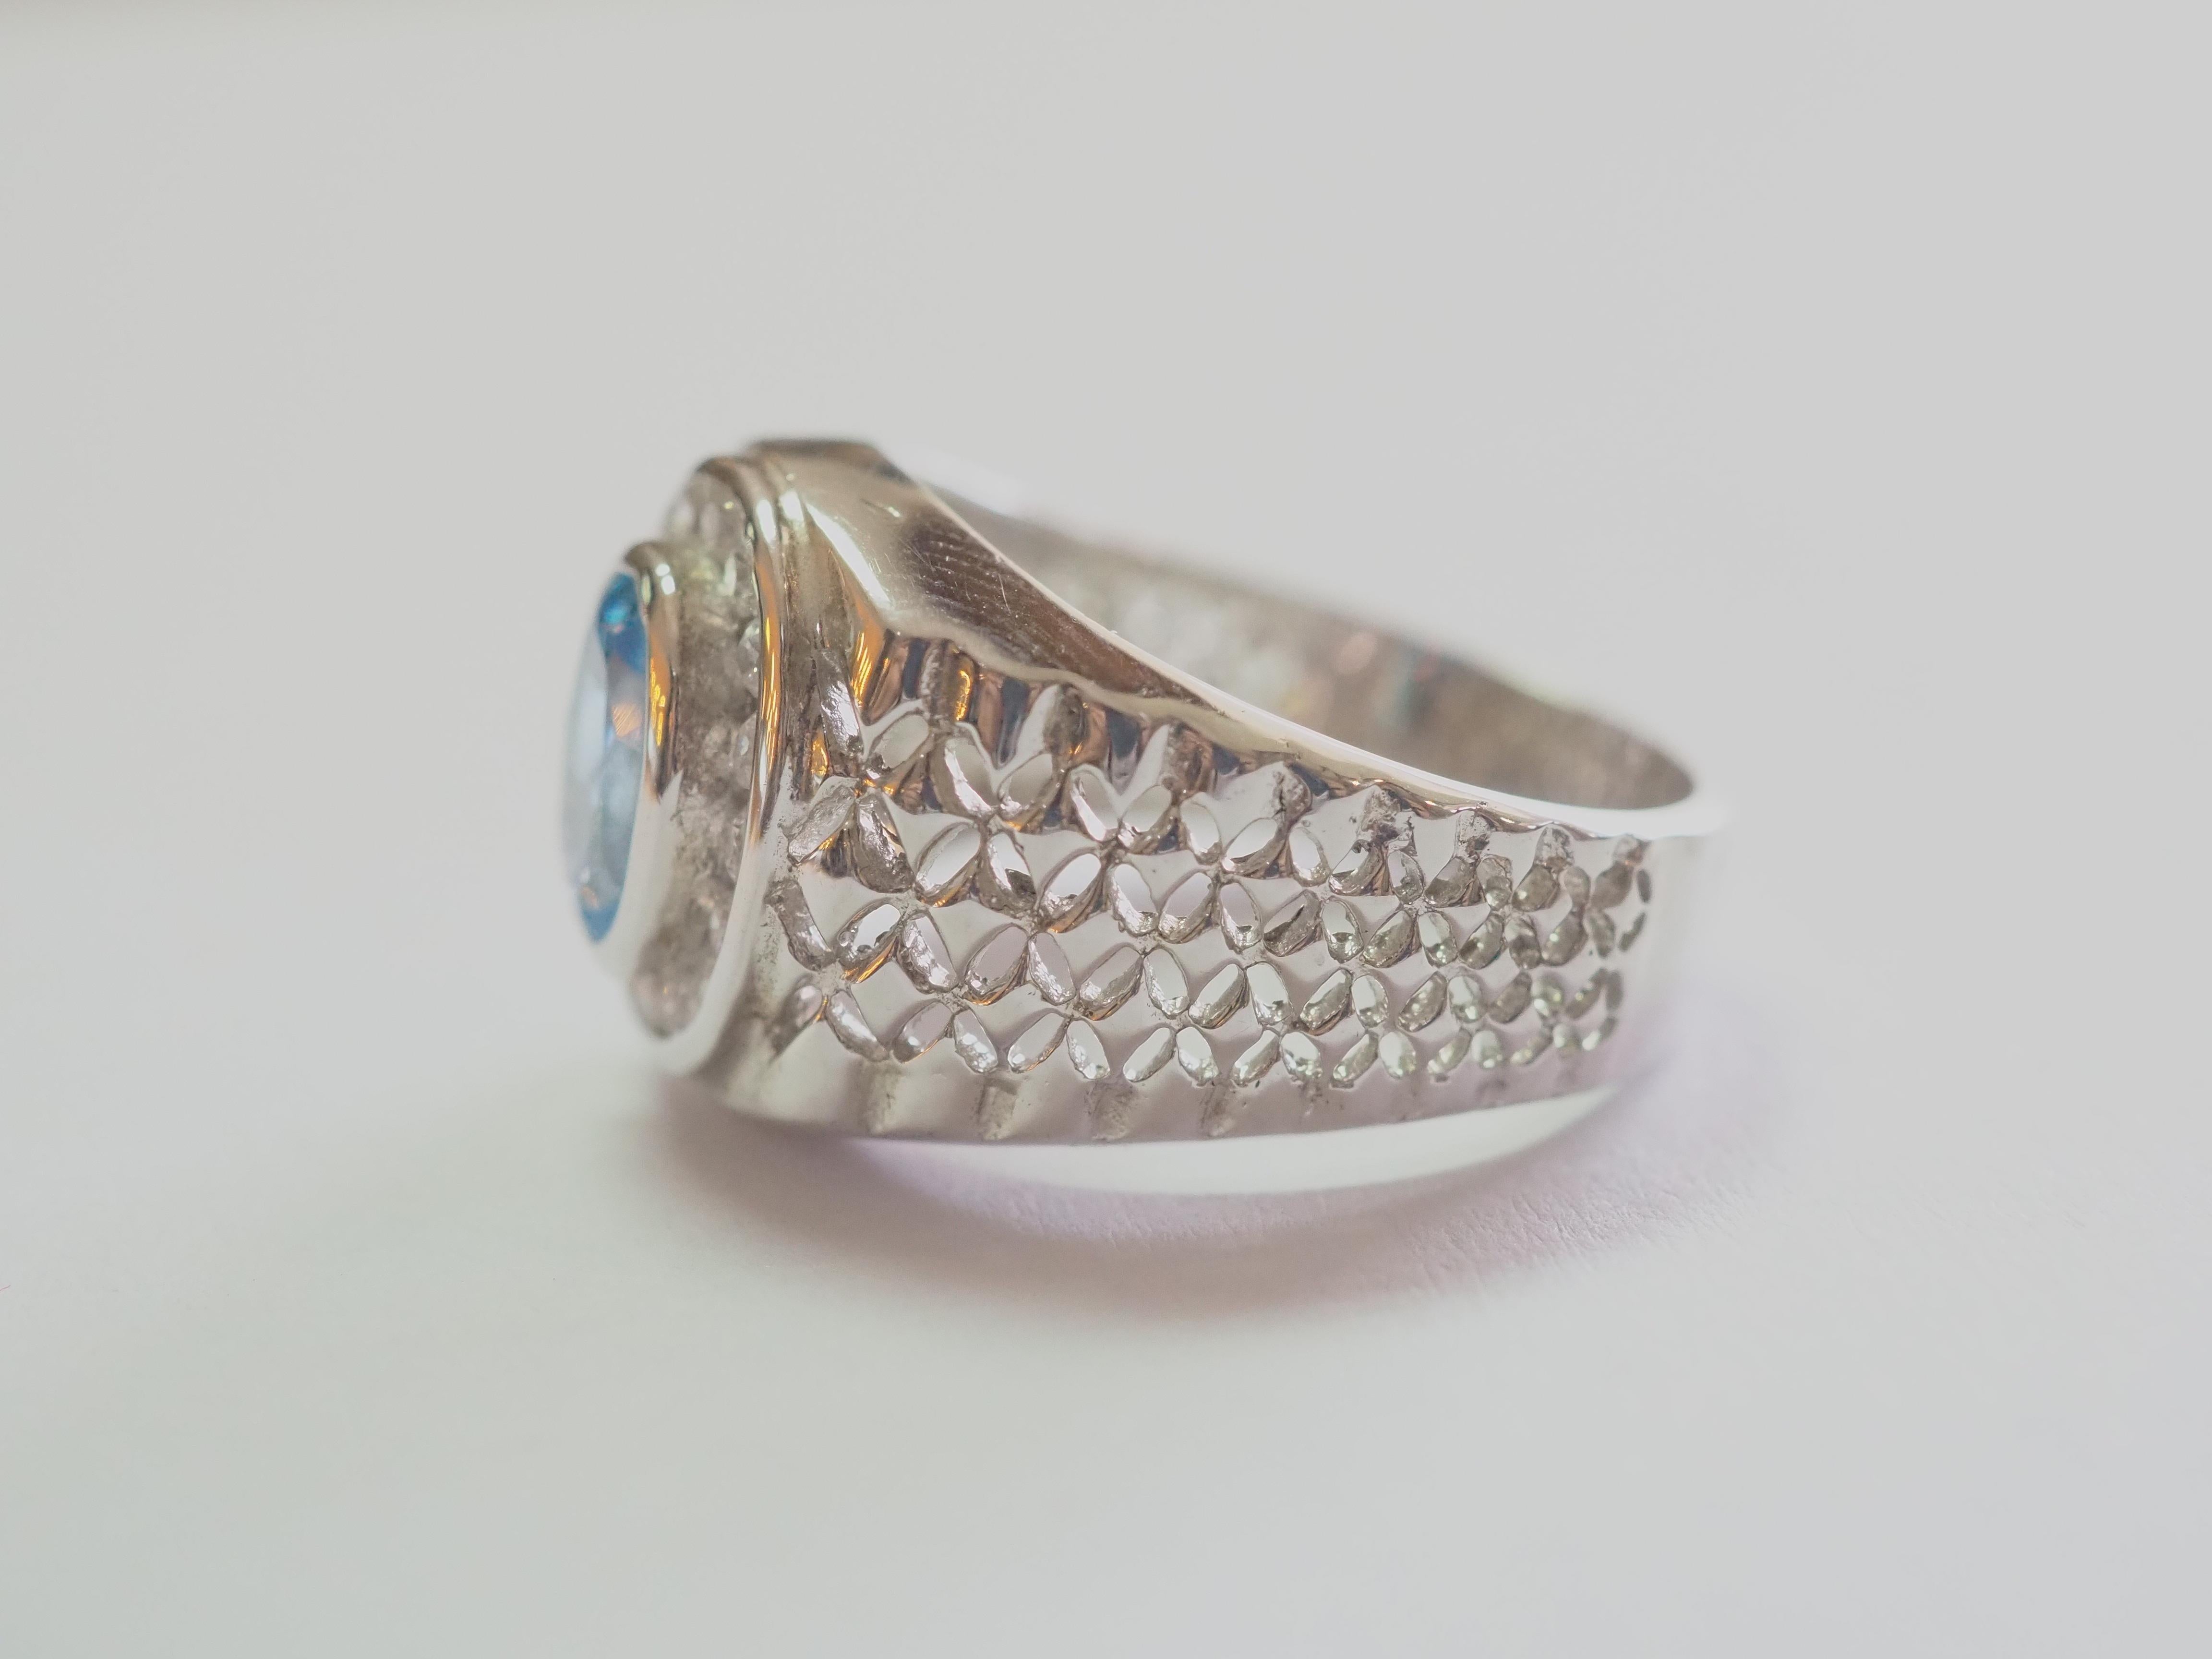 Dieser Ring ist ein wunderschöner Siegelring aus massivem Sterlingsilber. Der Ring ist mit einem natürlichen ovalen Blautopas in der Mitte verziert. Die umliegenden weißen Steine sind aus Zirkonia. Das einzigartige Gravurmuster auf dem Band ist ein